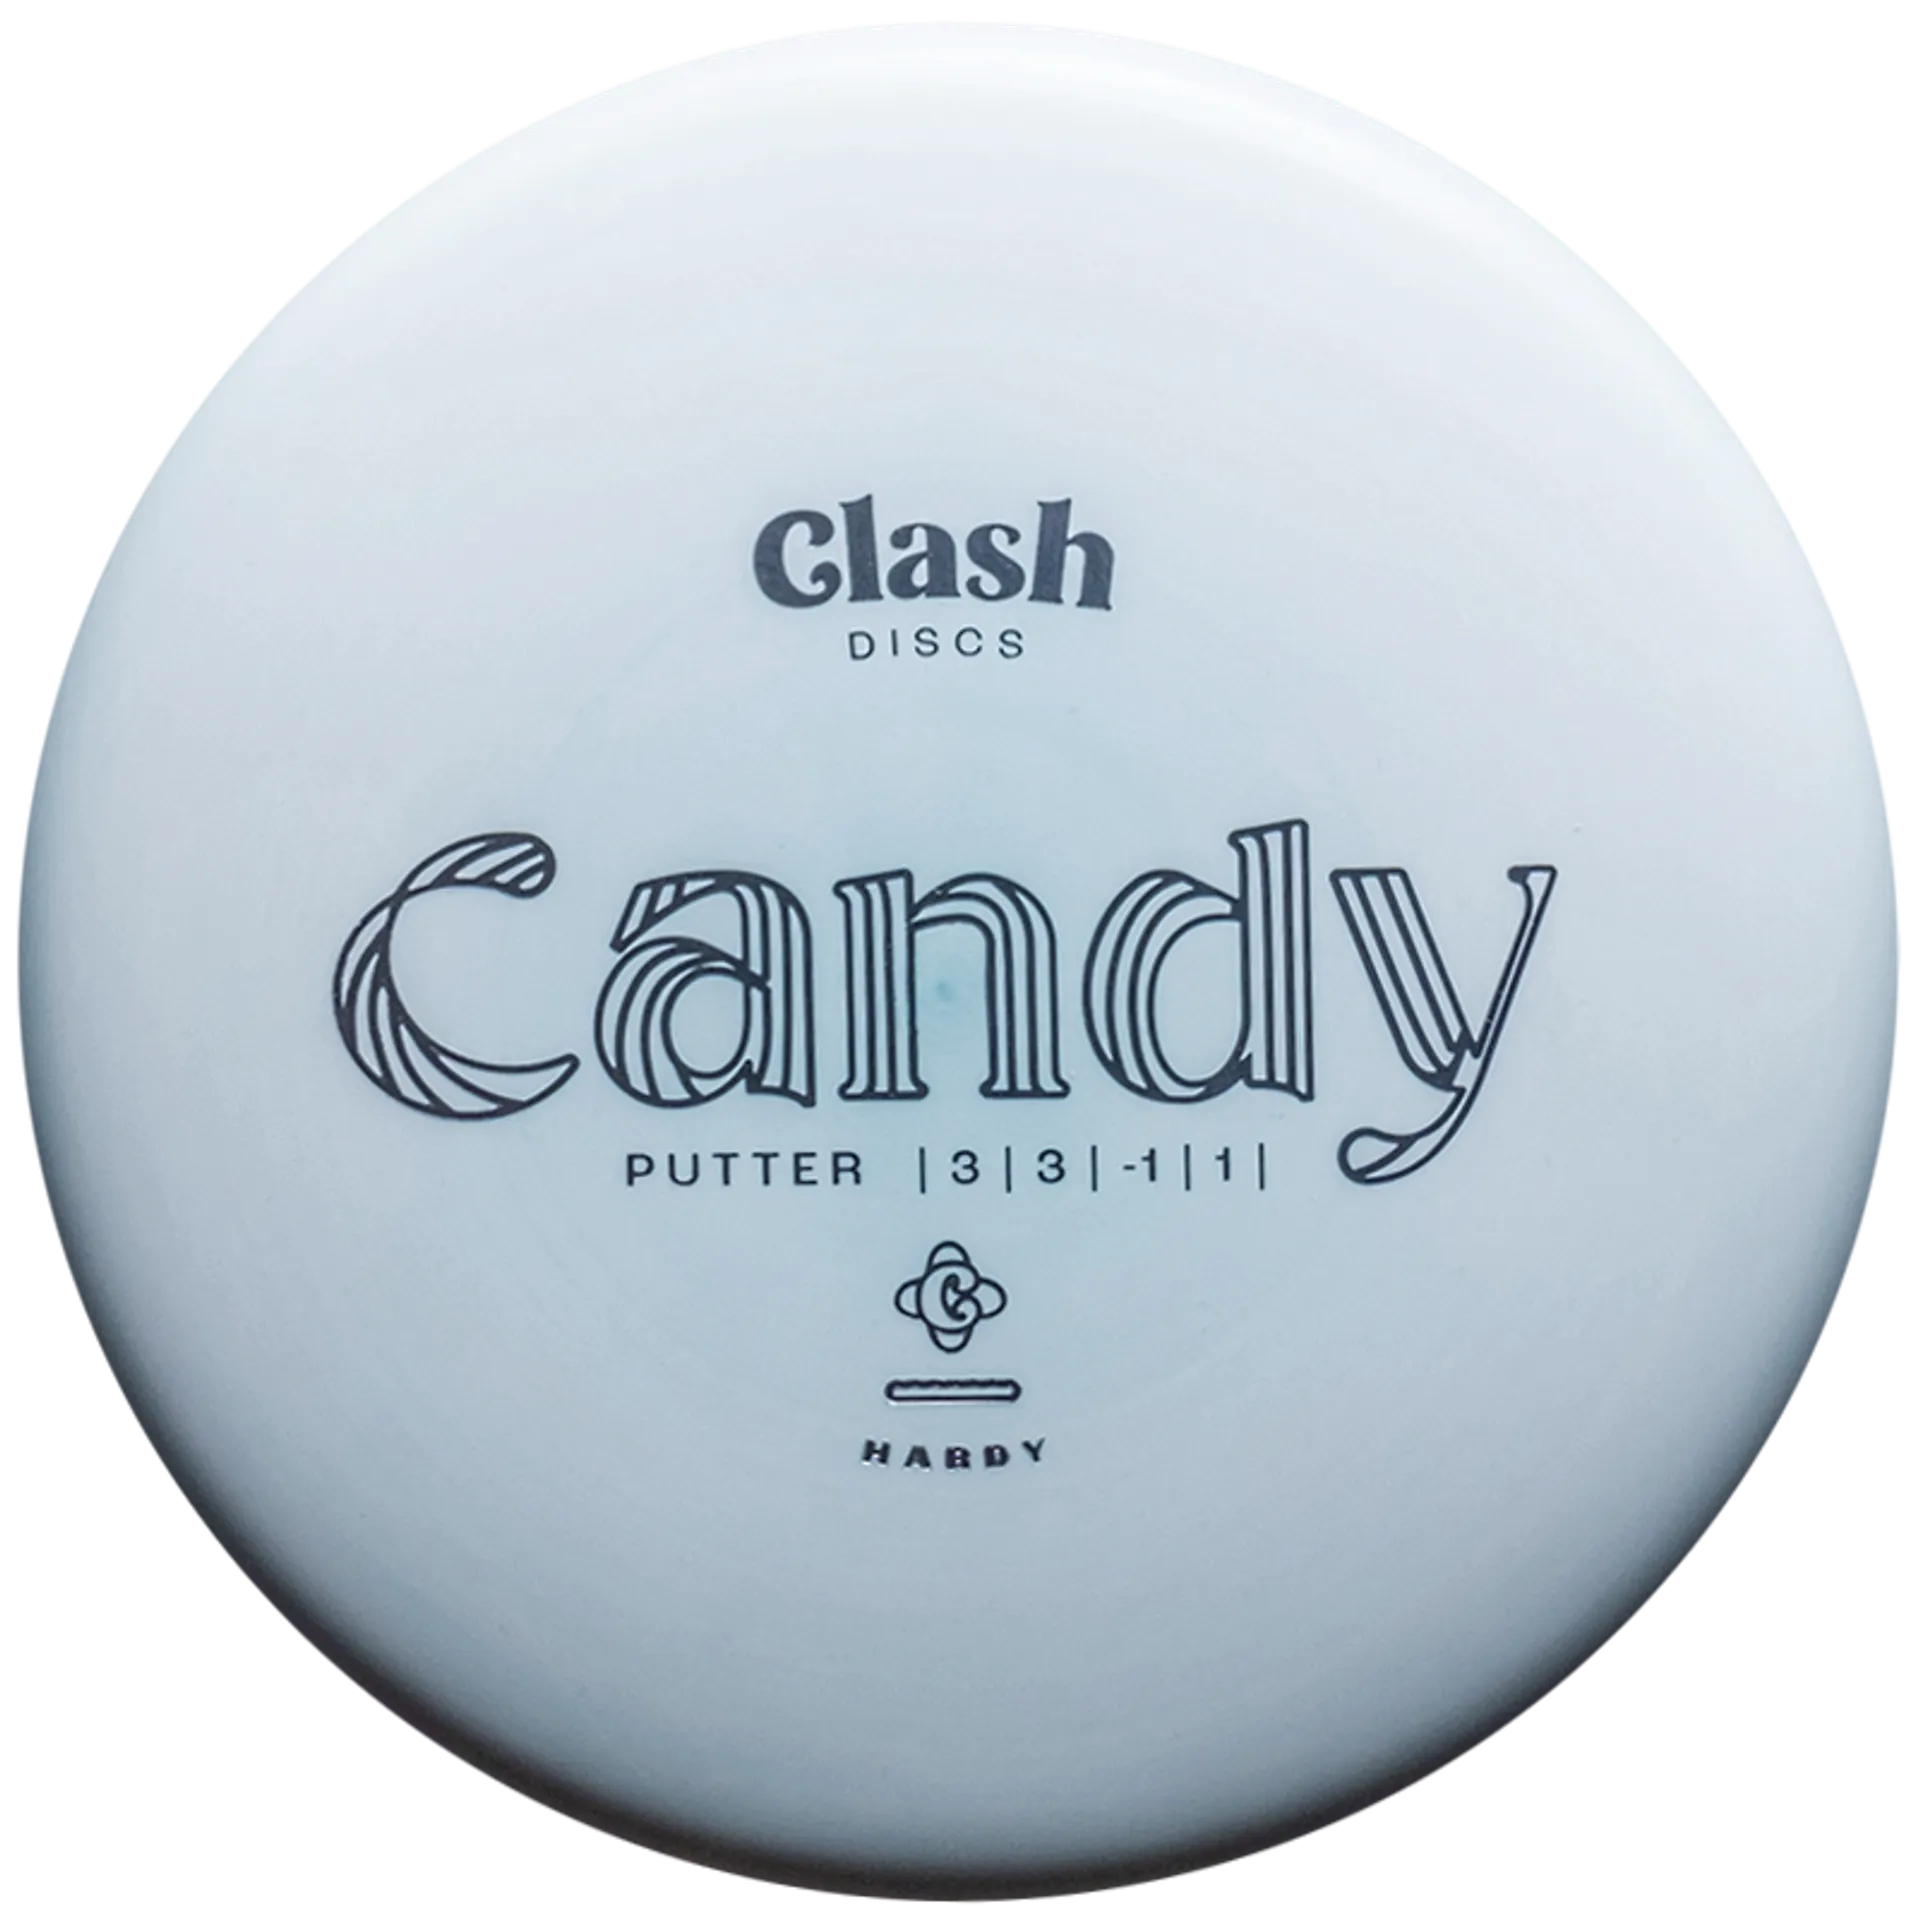 Clash Discs putteri Candy Hardy